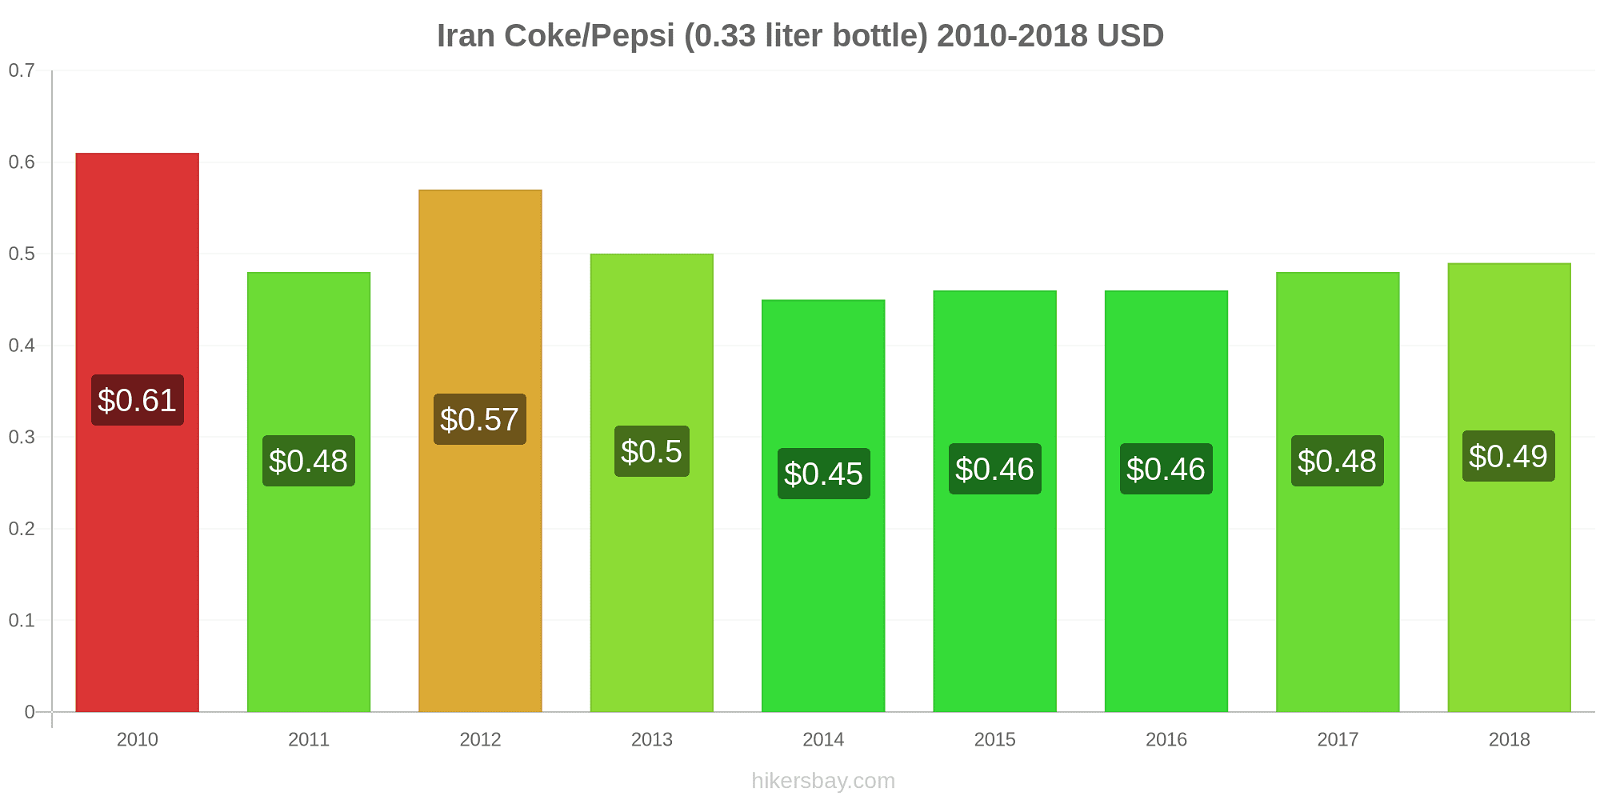 Iran price changes Coke/Pepsi (0.33 liter bottle) hikersbay.com